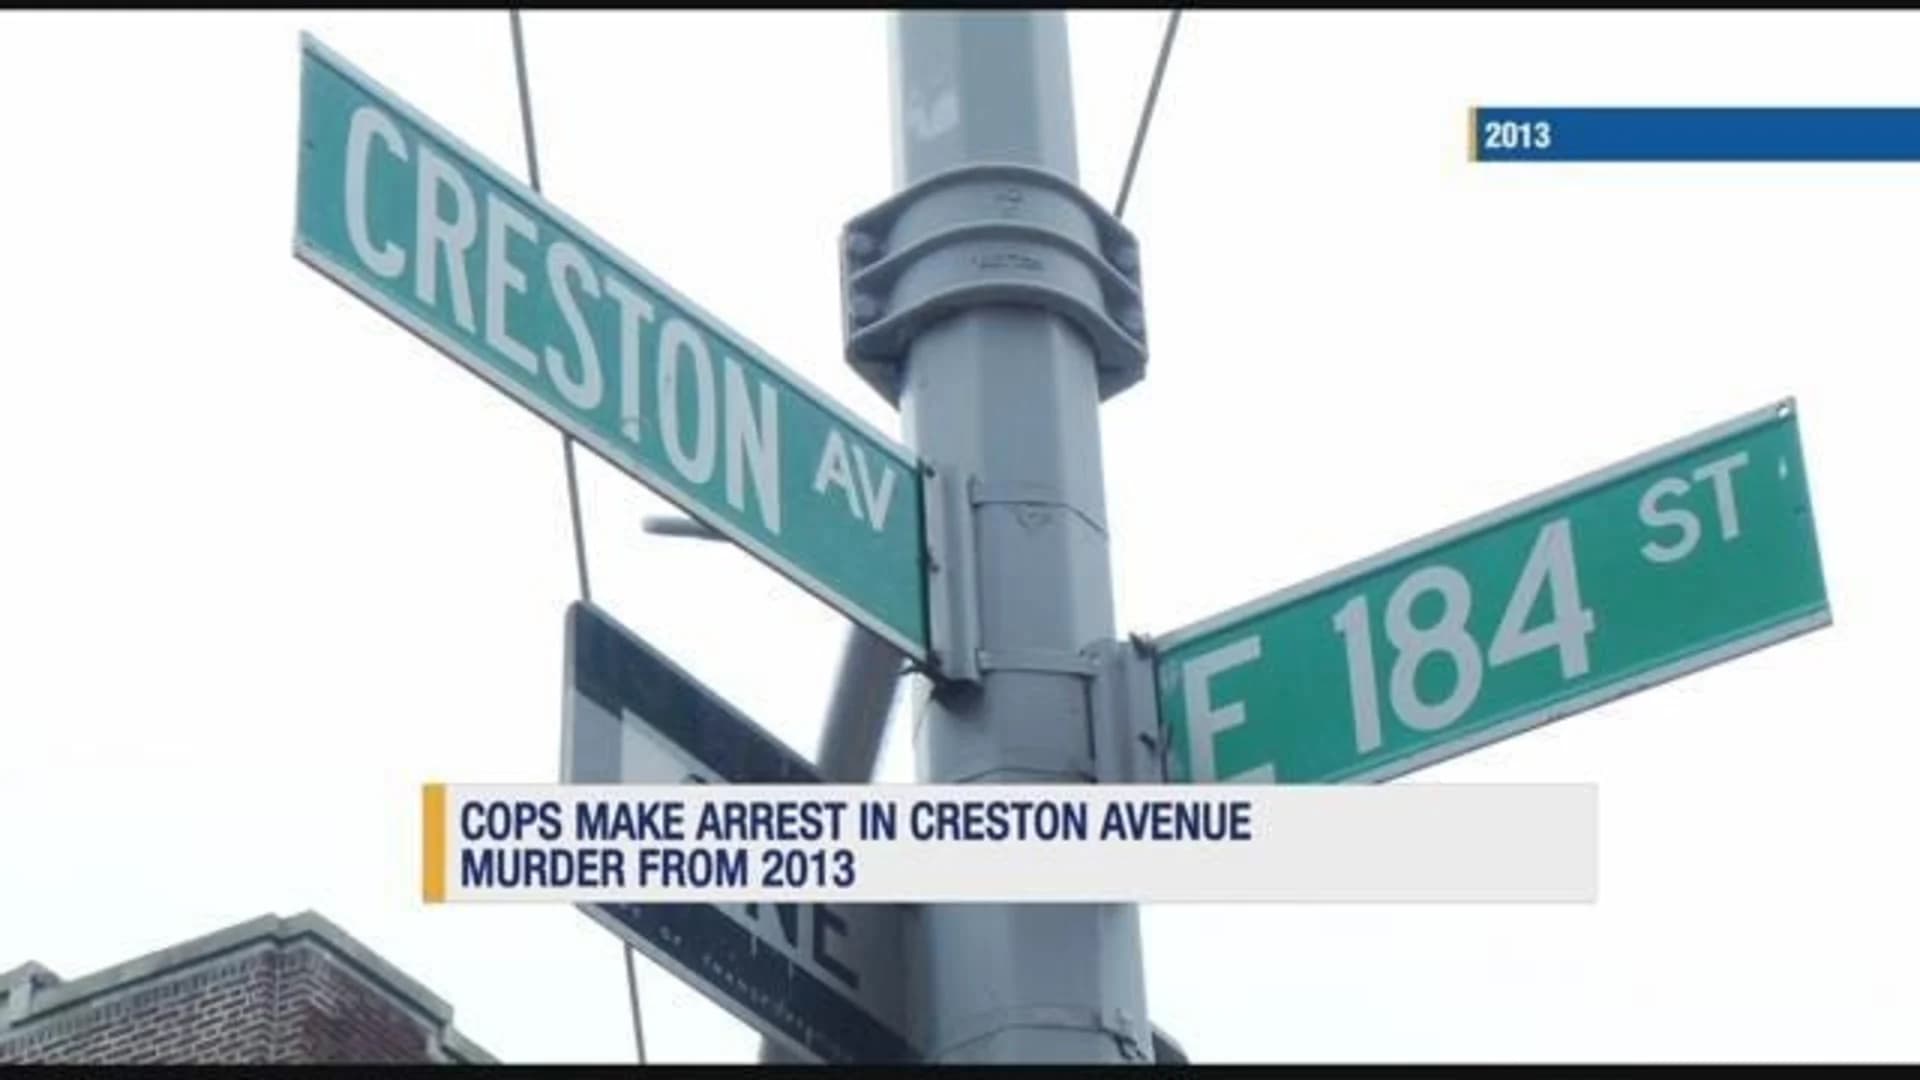 Police make arrest in 2013 Creston Avenue murder